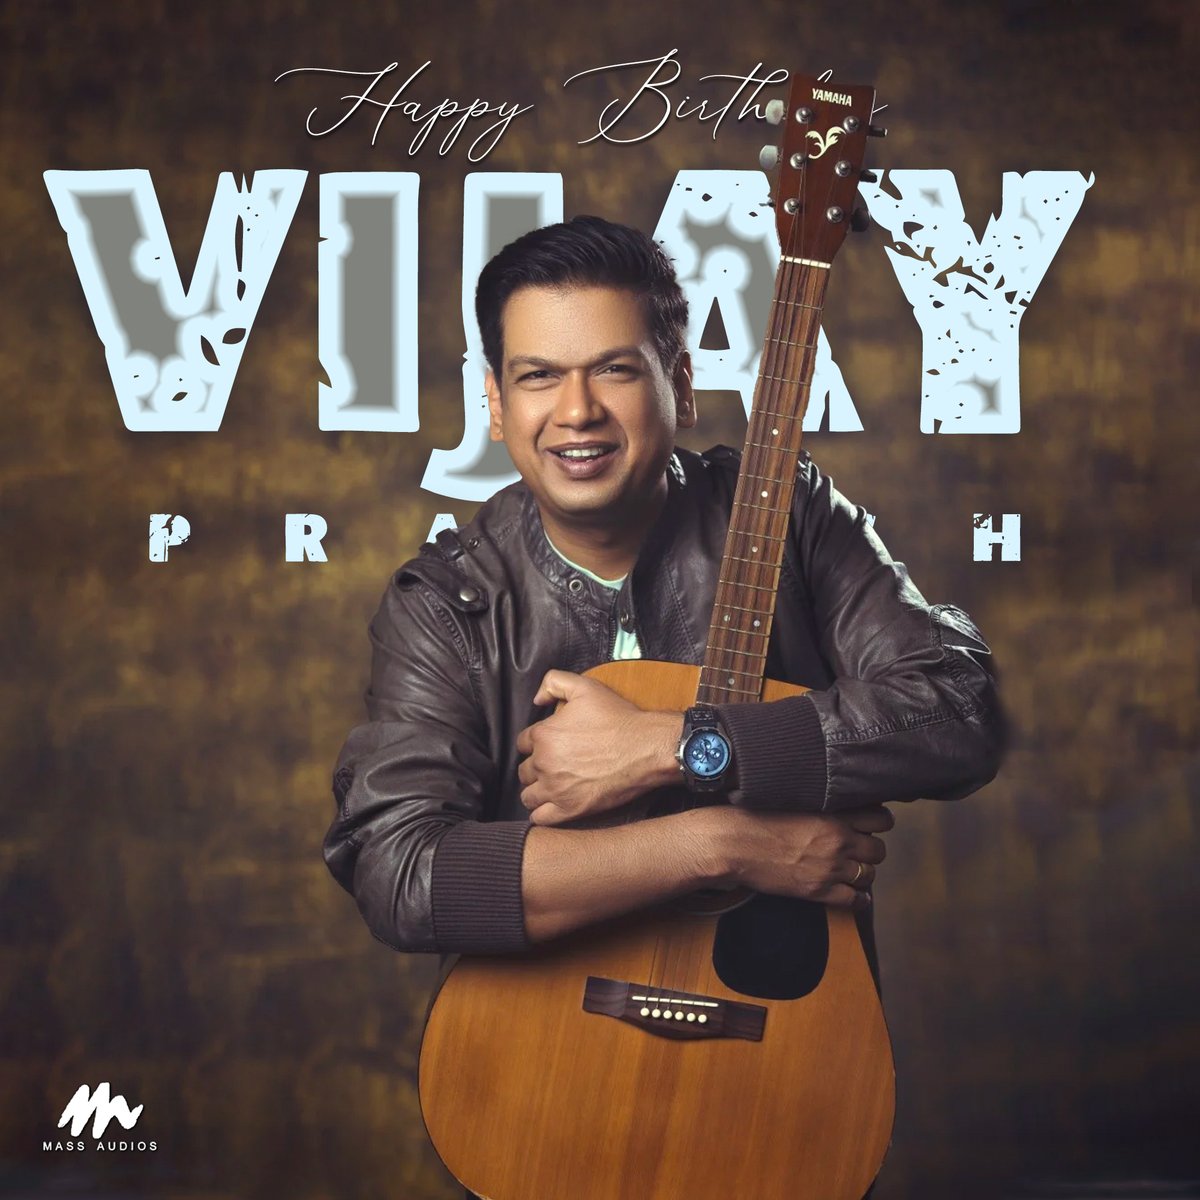 Wishing #vijayprakash A Very Happy Birthday 
#happybirthdayvijayprakash #hbdVijayPrakash #massaudios